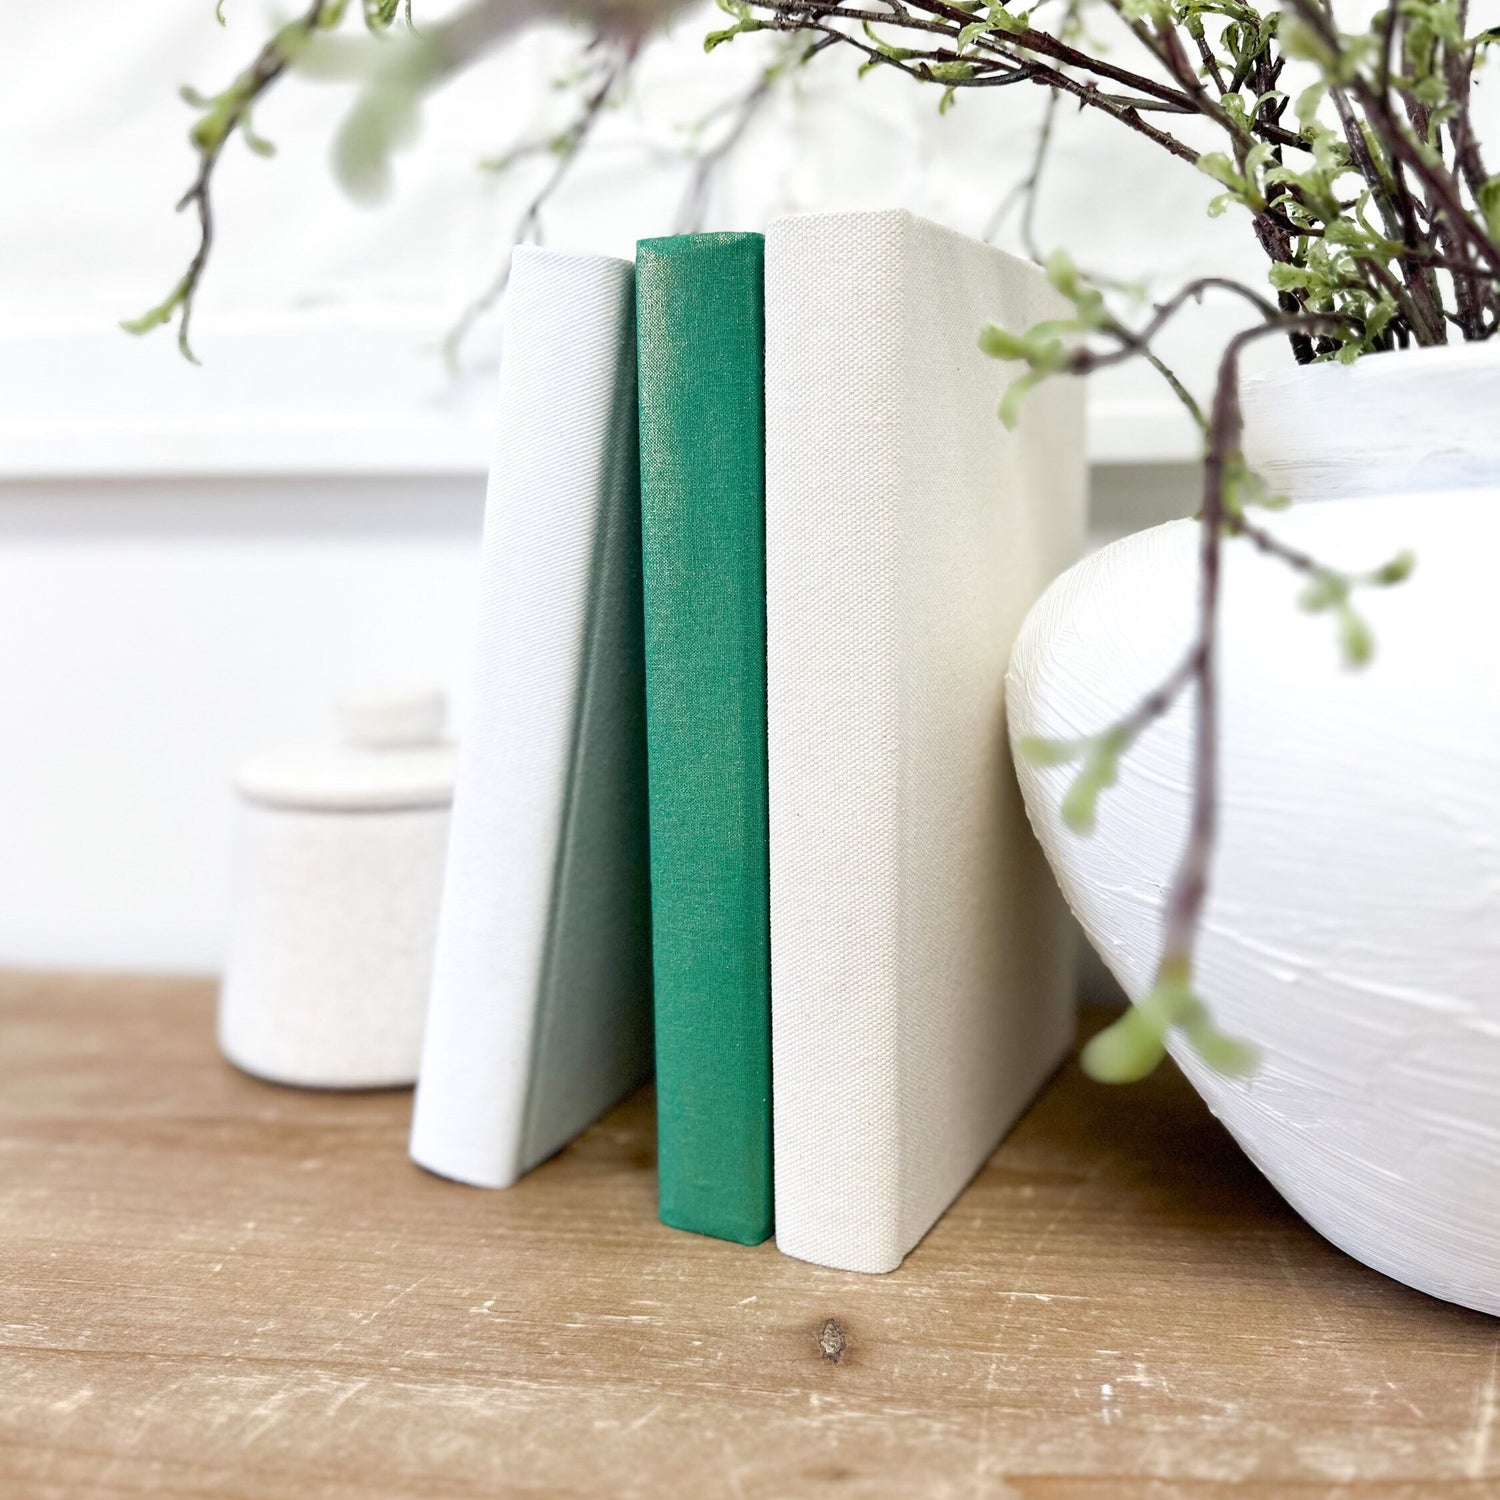 Green Shelf Decor, Living Room Decor, Designer Books, Book Bundle